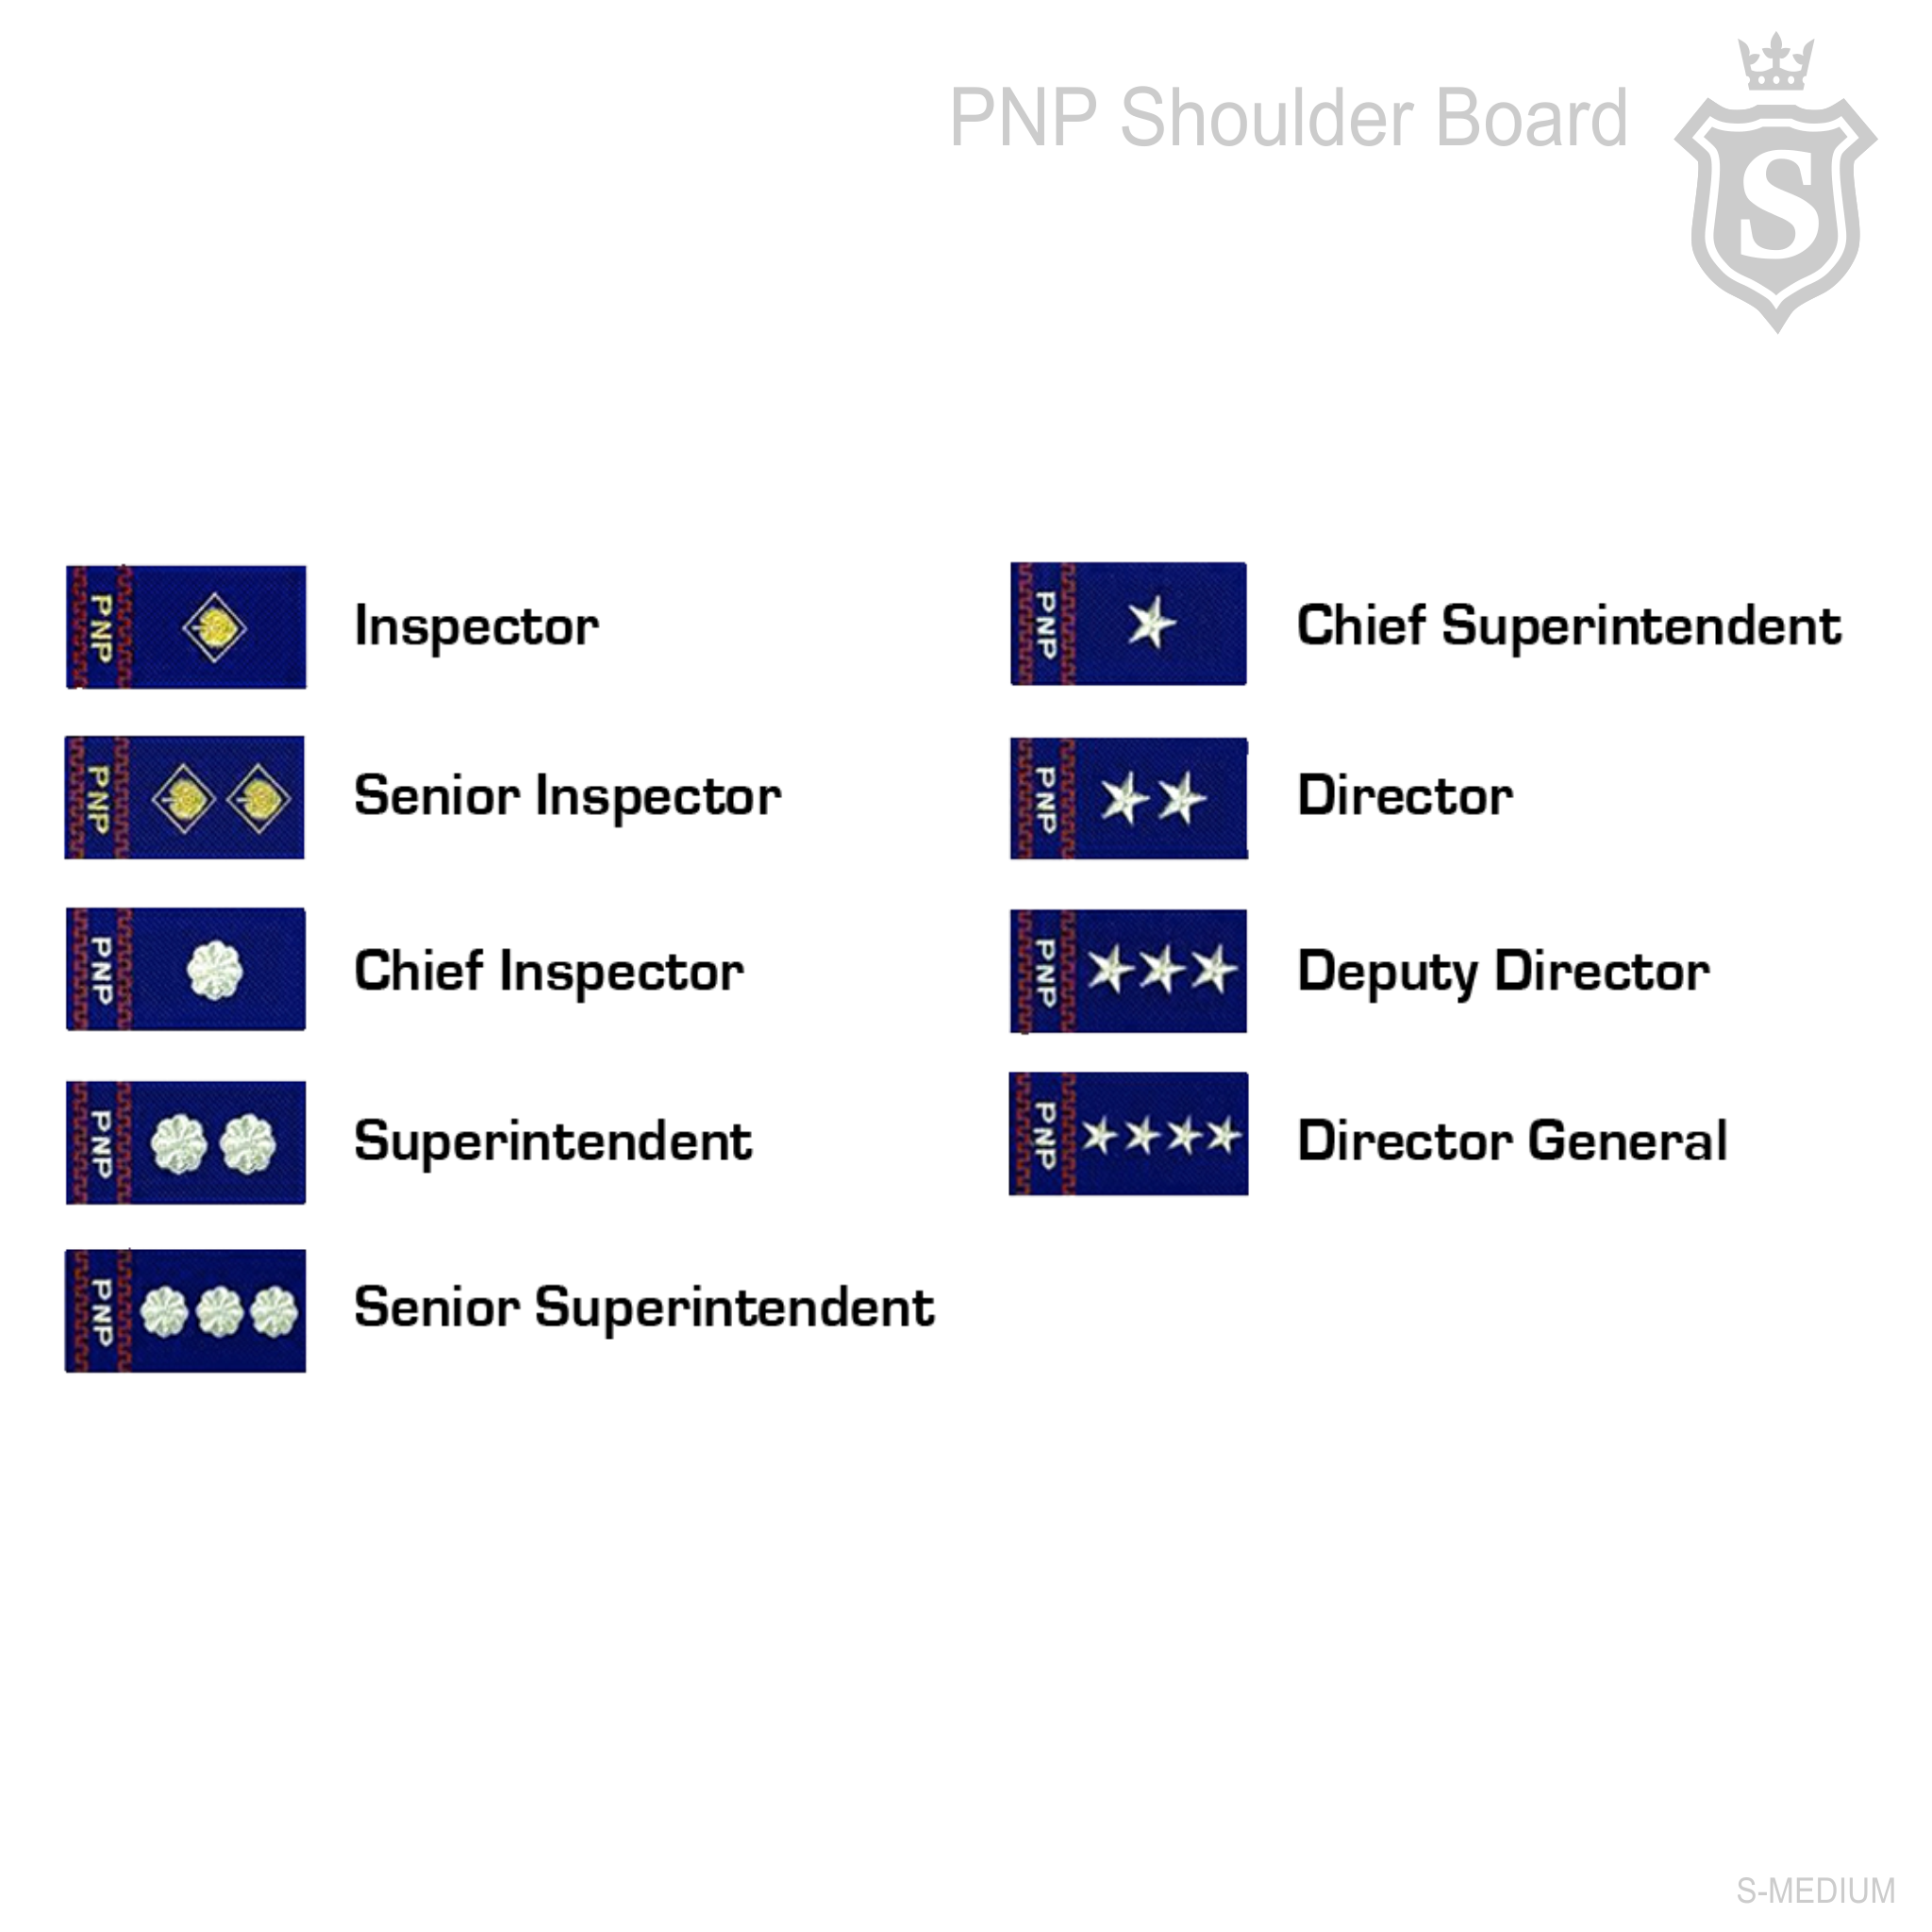 PNP Shoulder Board